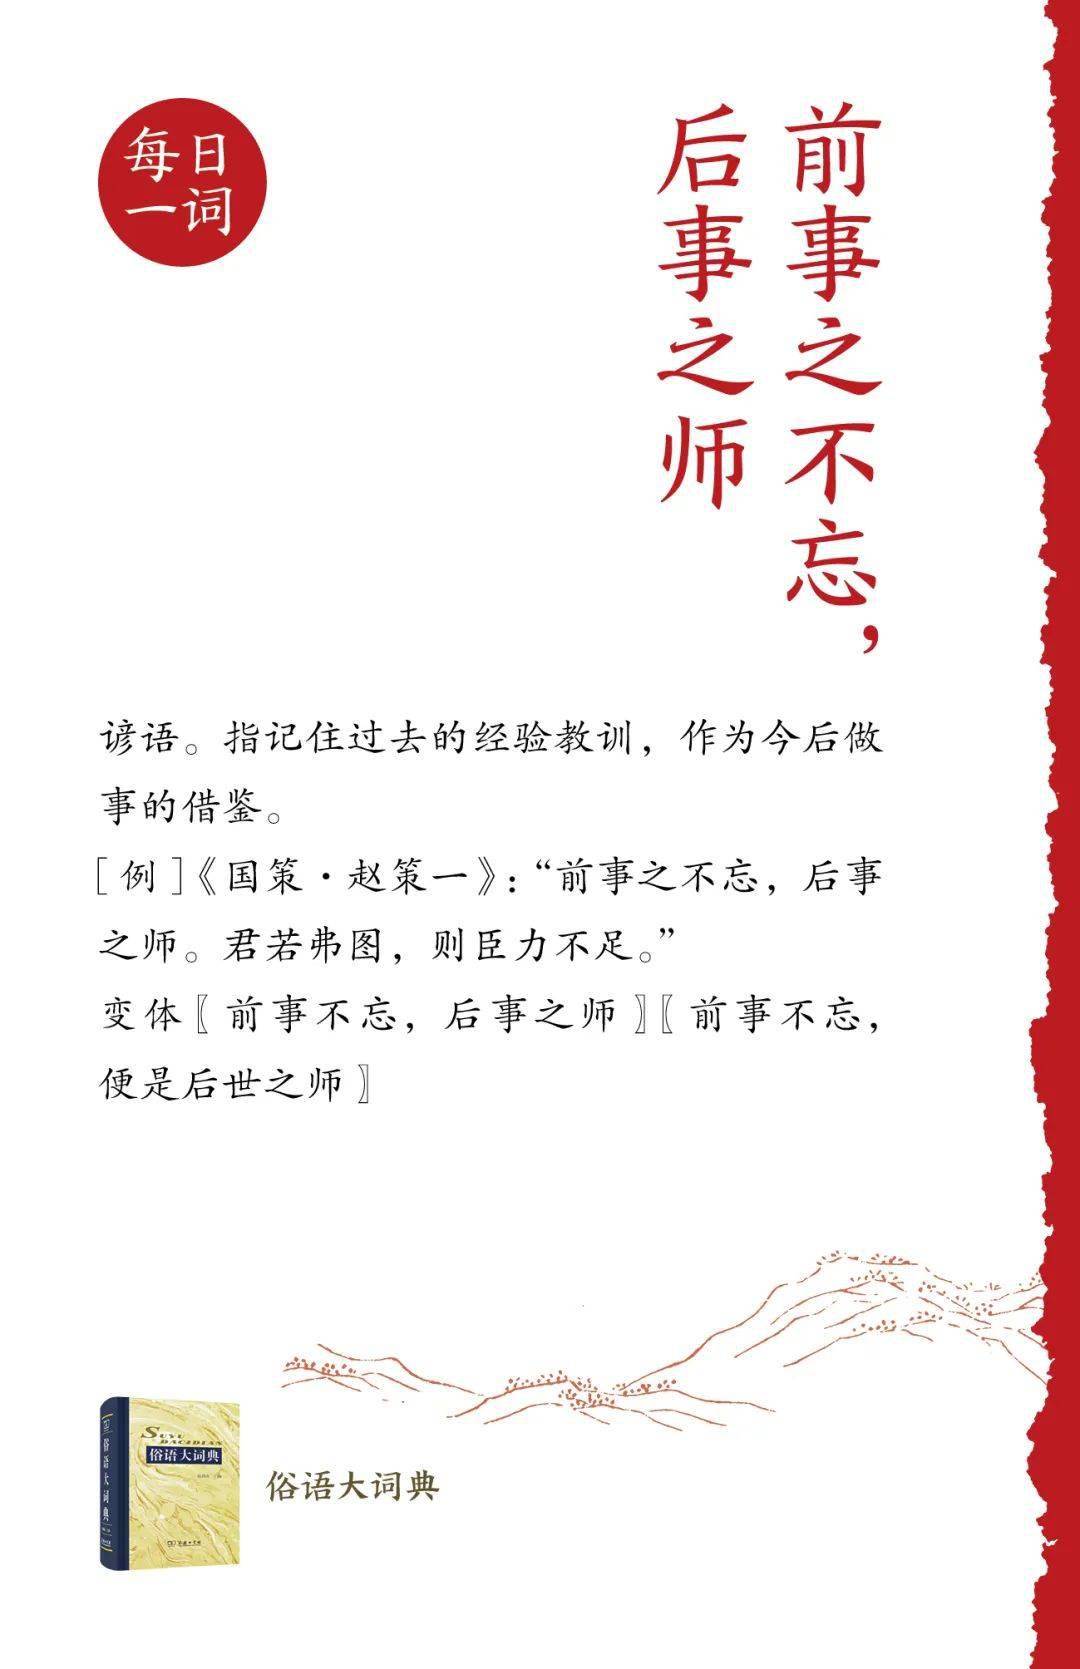 社会扶贫网苹果版:商务印书馆关于中华学术外译项目的公告-第2张图片-太平洋在线下载